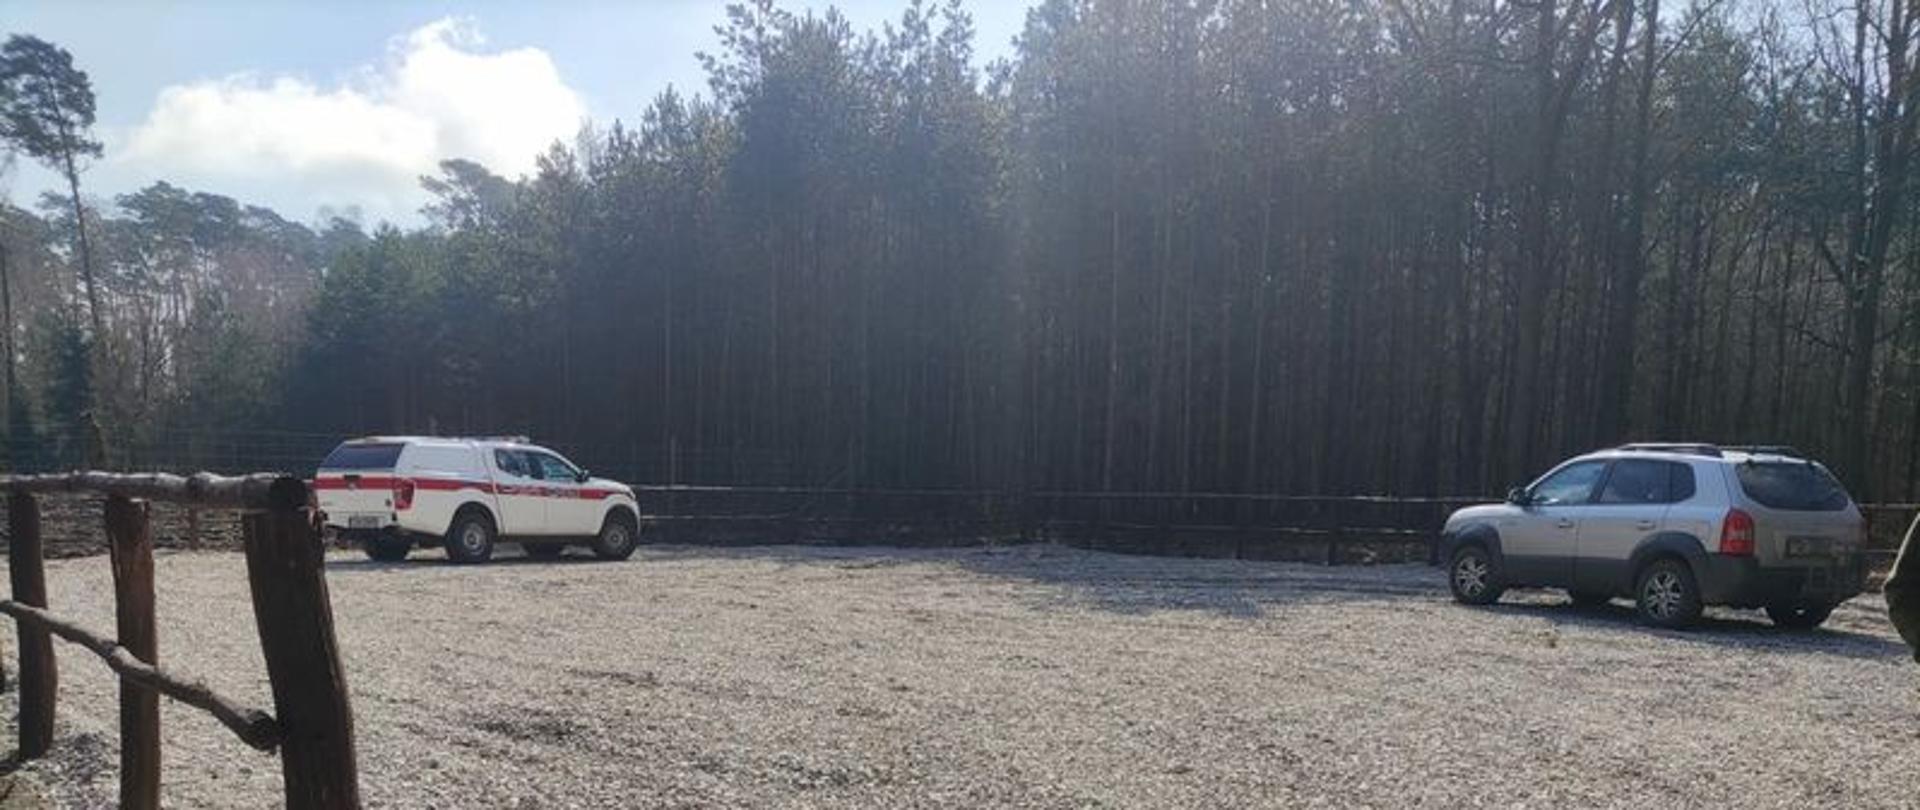 Zdjęcie przestawia samochód SLOP NISSAN NAVARA należący do KP PSP Radziejów na nowopowstałym placu manewrowym zlokalizowanym w pobliżu punktu czerpania wody, tj. zbiornika przeciwpożarowego na terenach leśnych Leśnictwa Osięciny w miejscowości Samszyce.